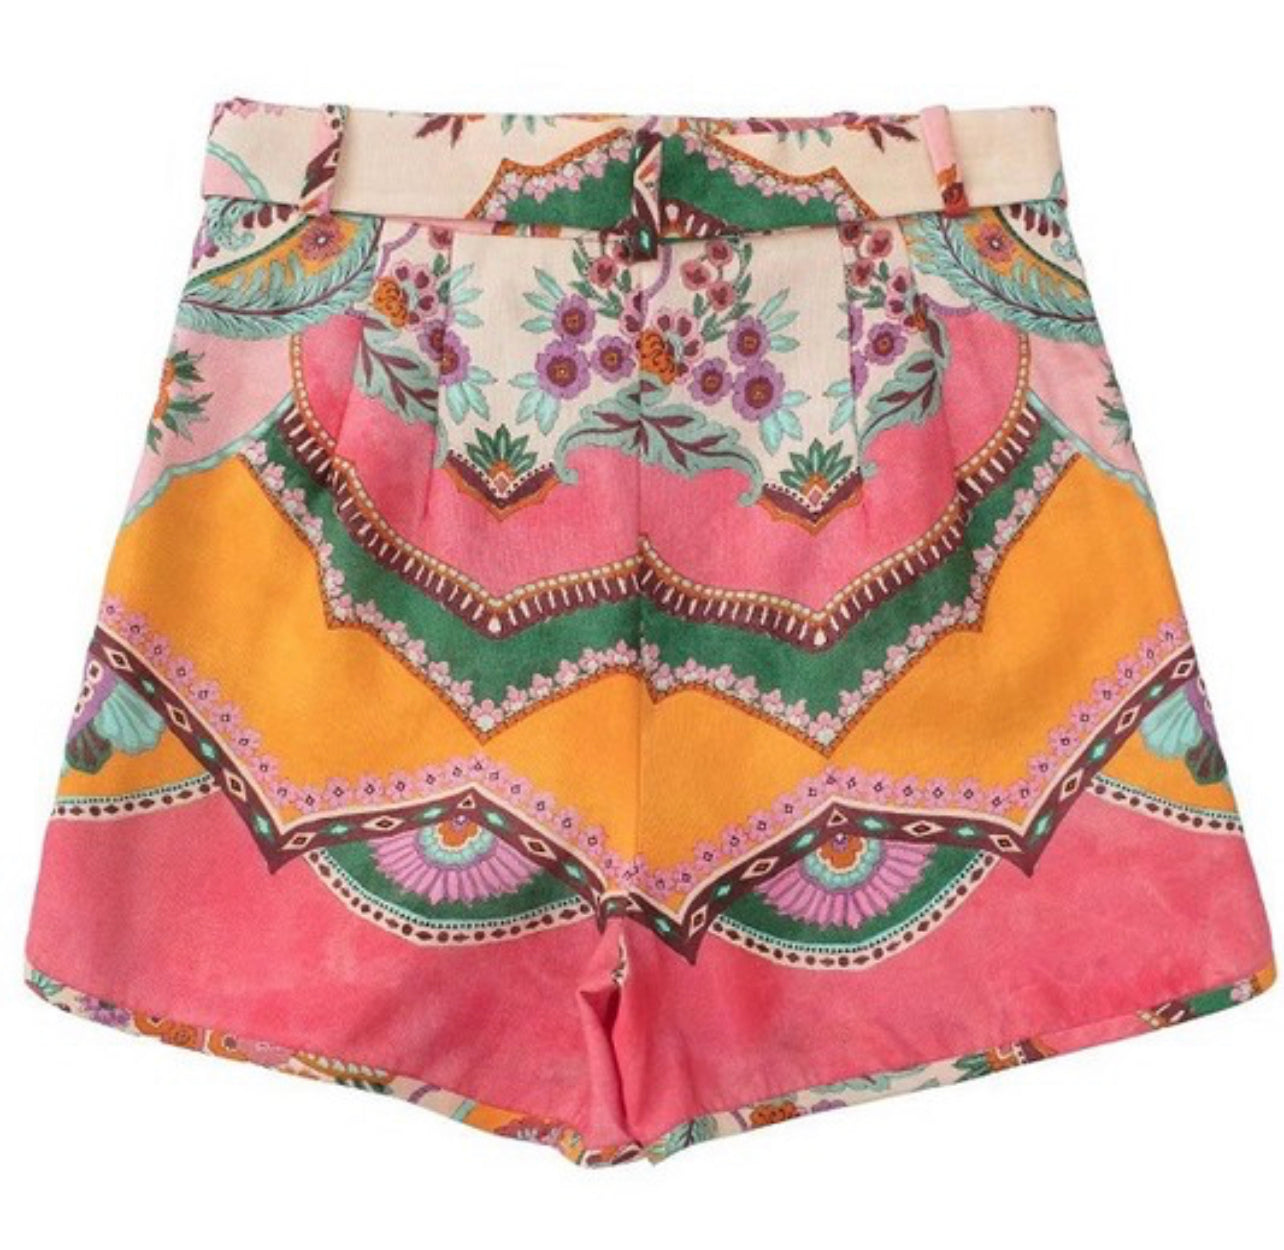 St. Tropez Floral Shorts